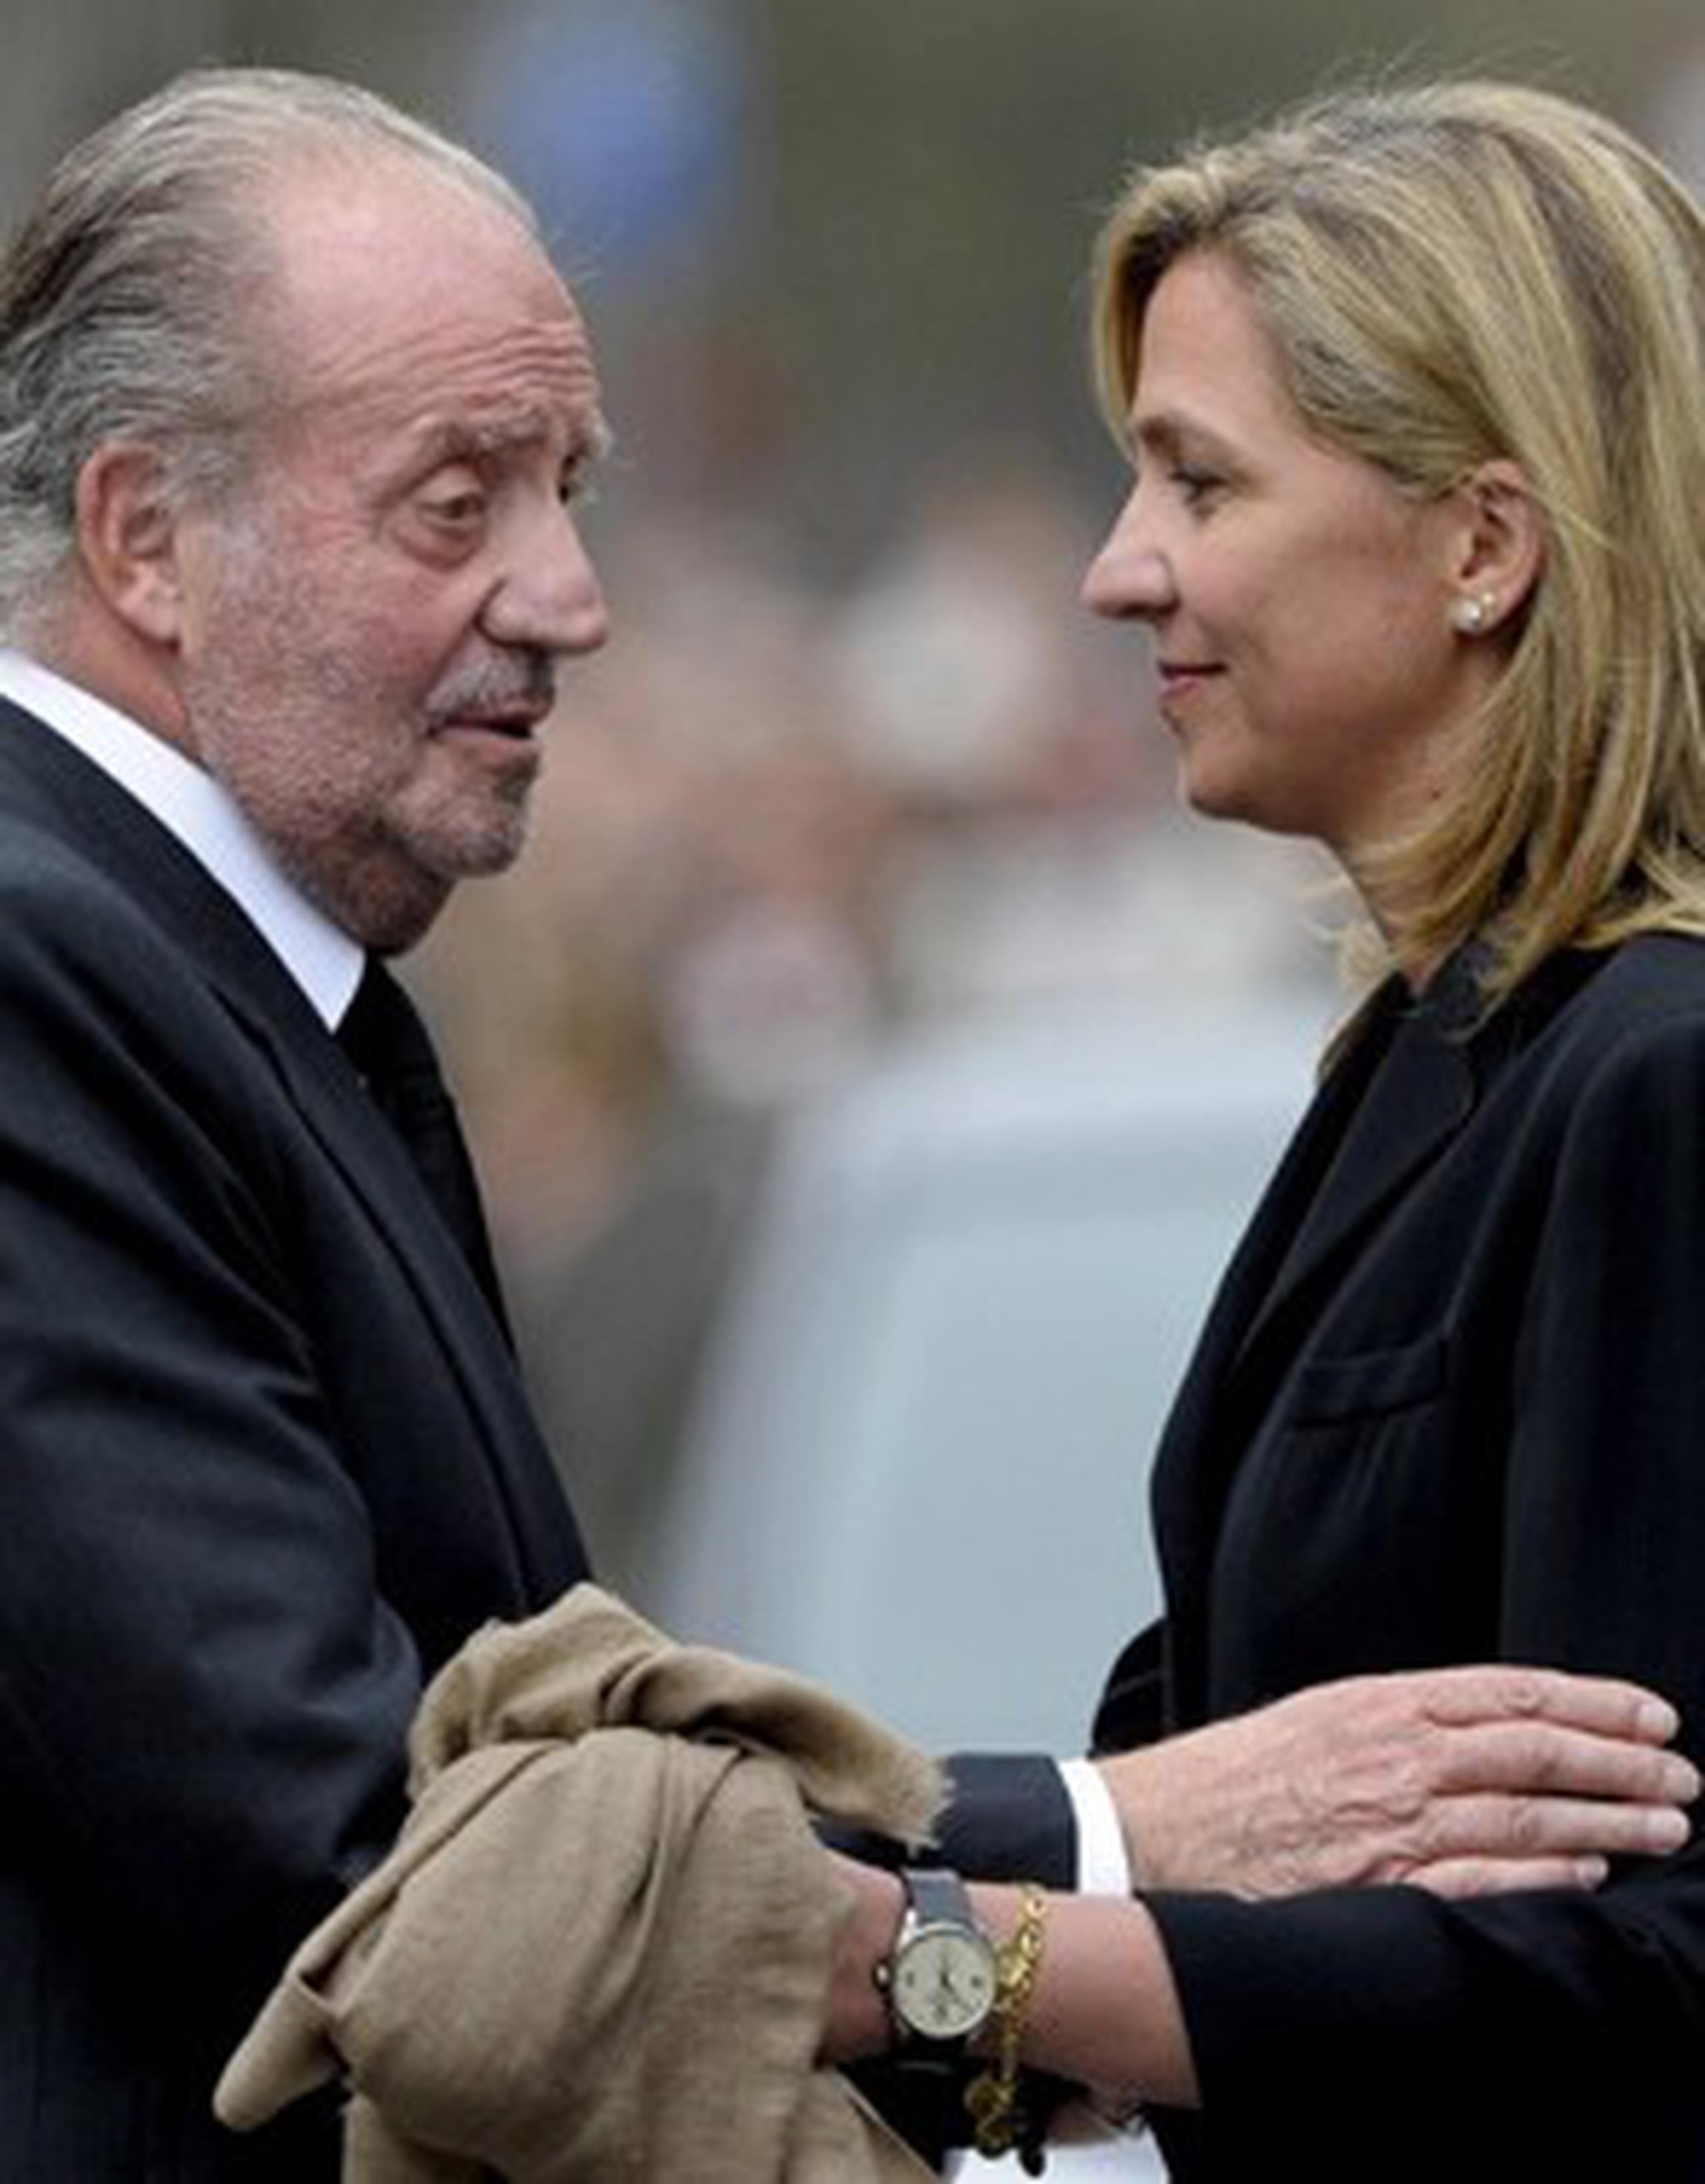 La pesquisa contra la infanta Cristina han dañado seriamente la imagen del rey Juan Carlos, de 76 años. (AFP)